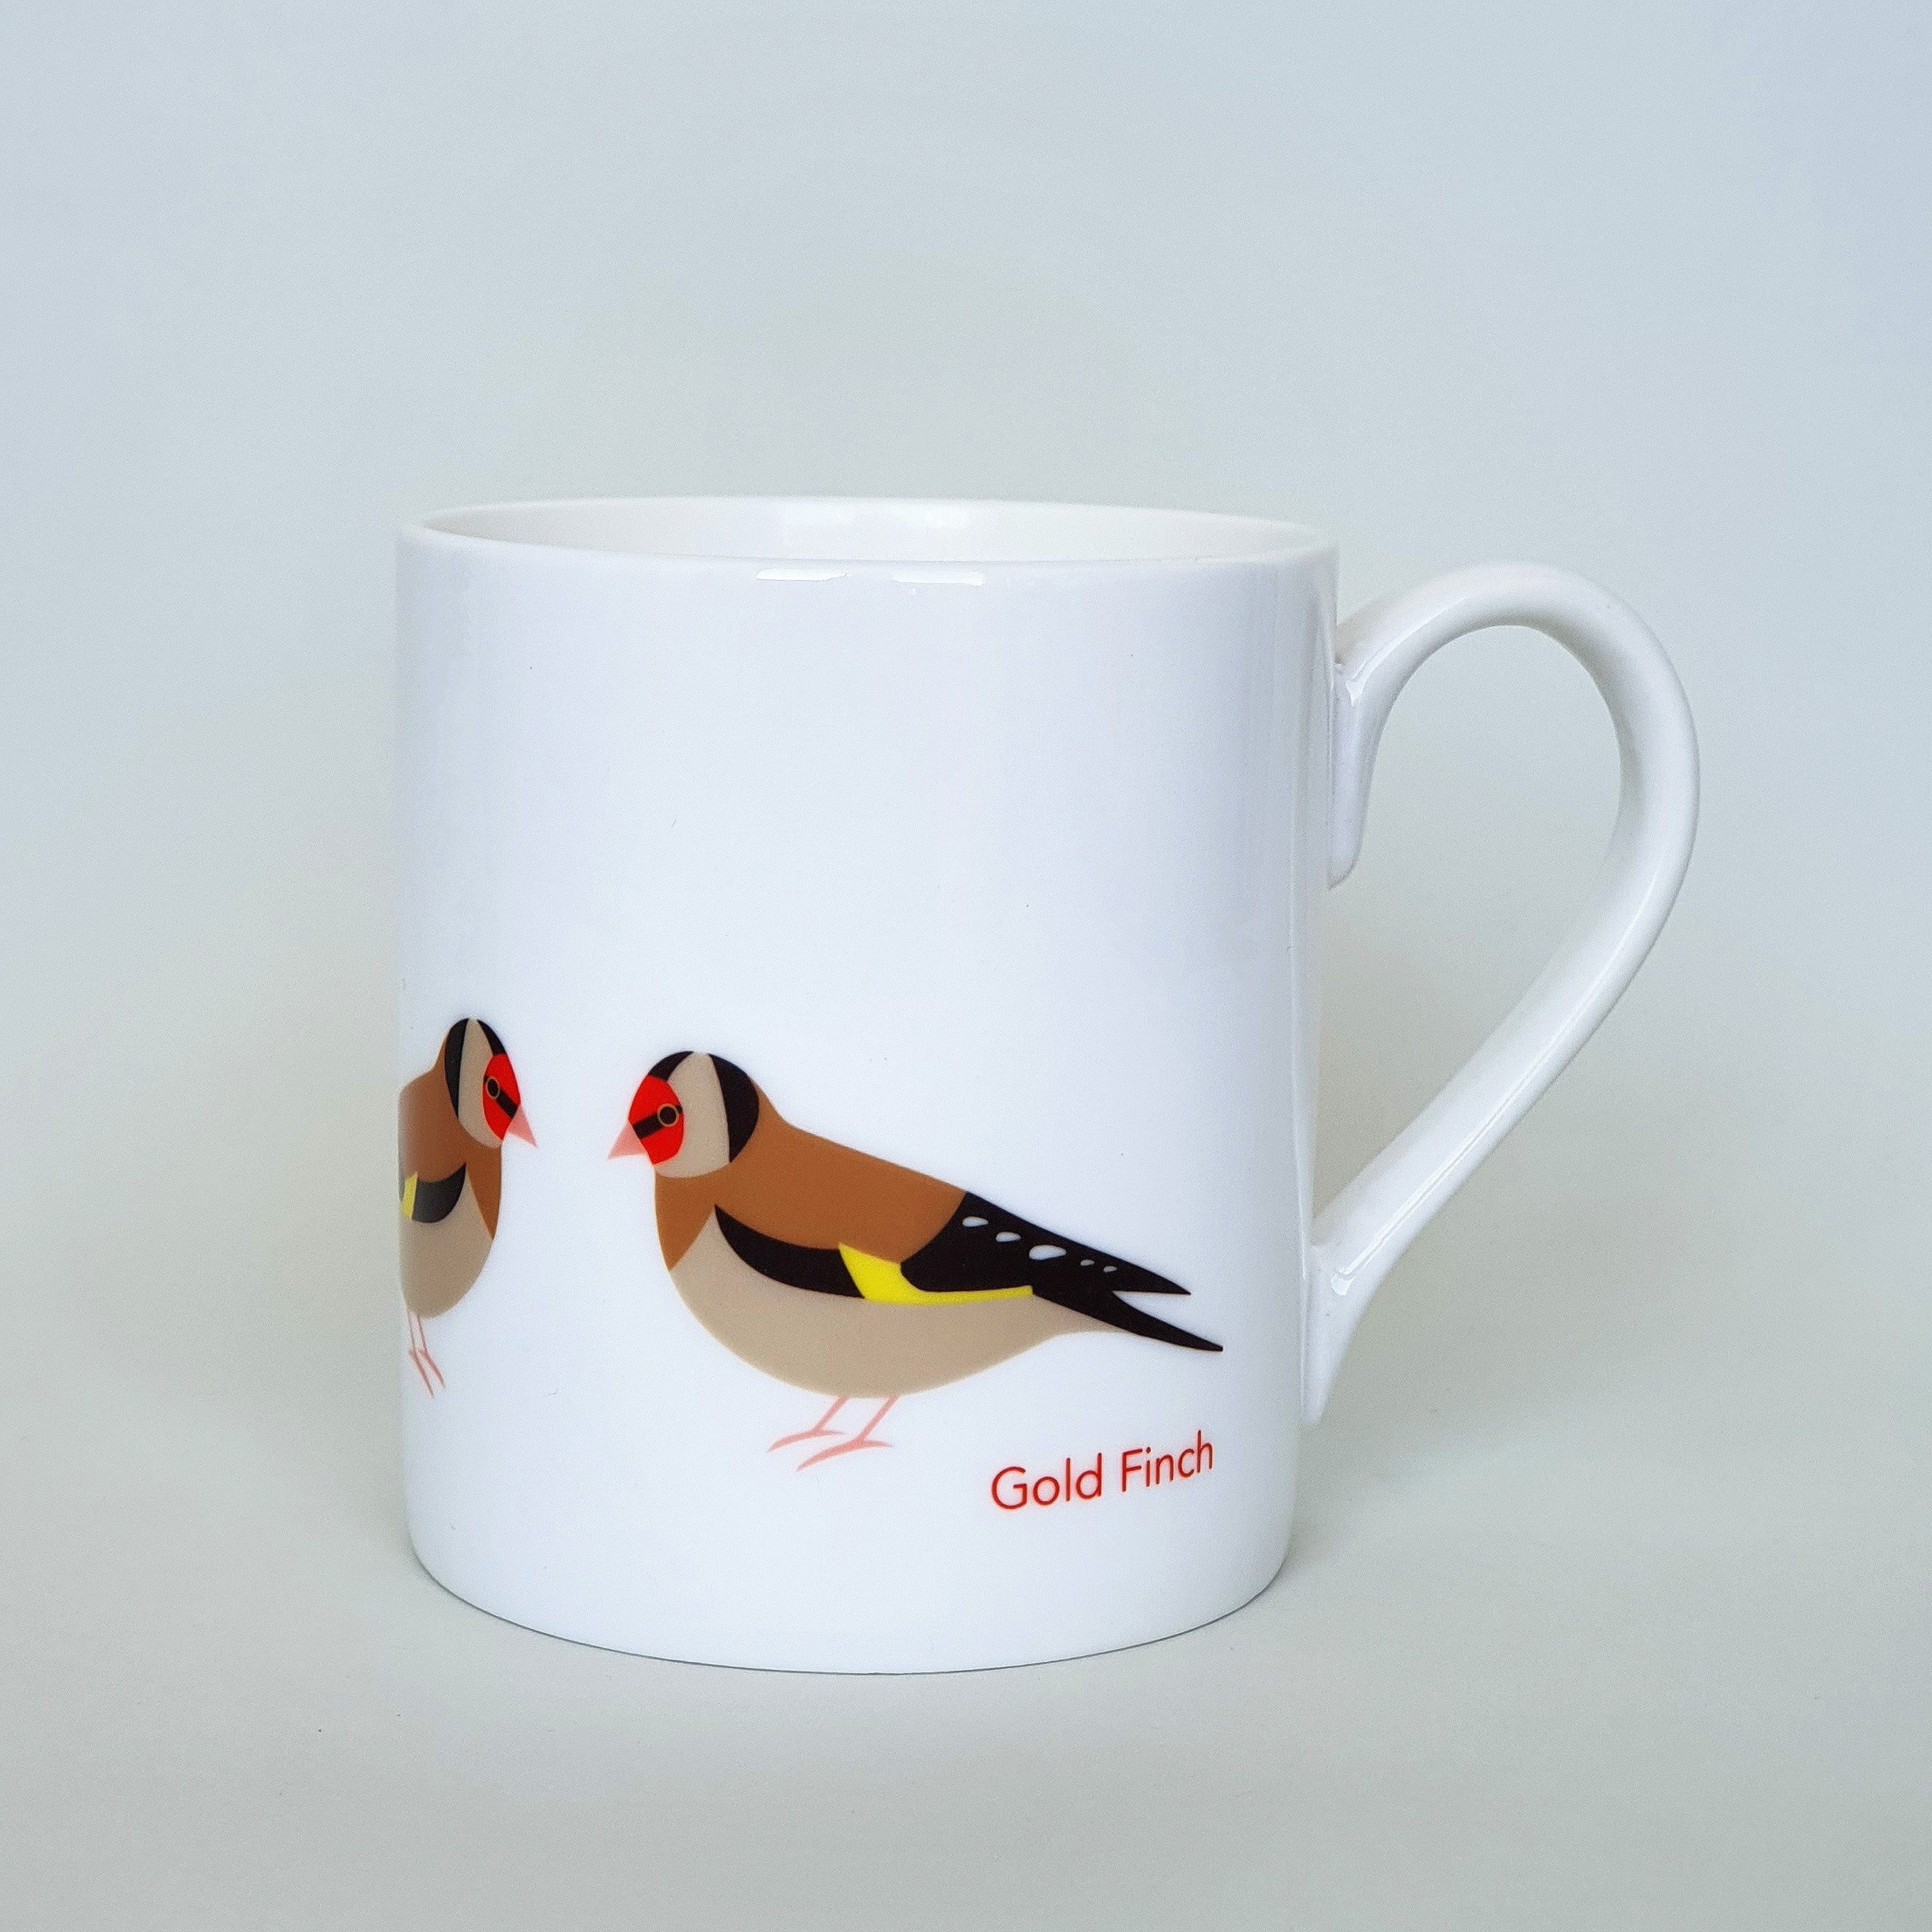 Goldfinch mug